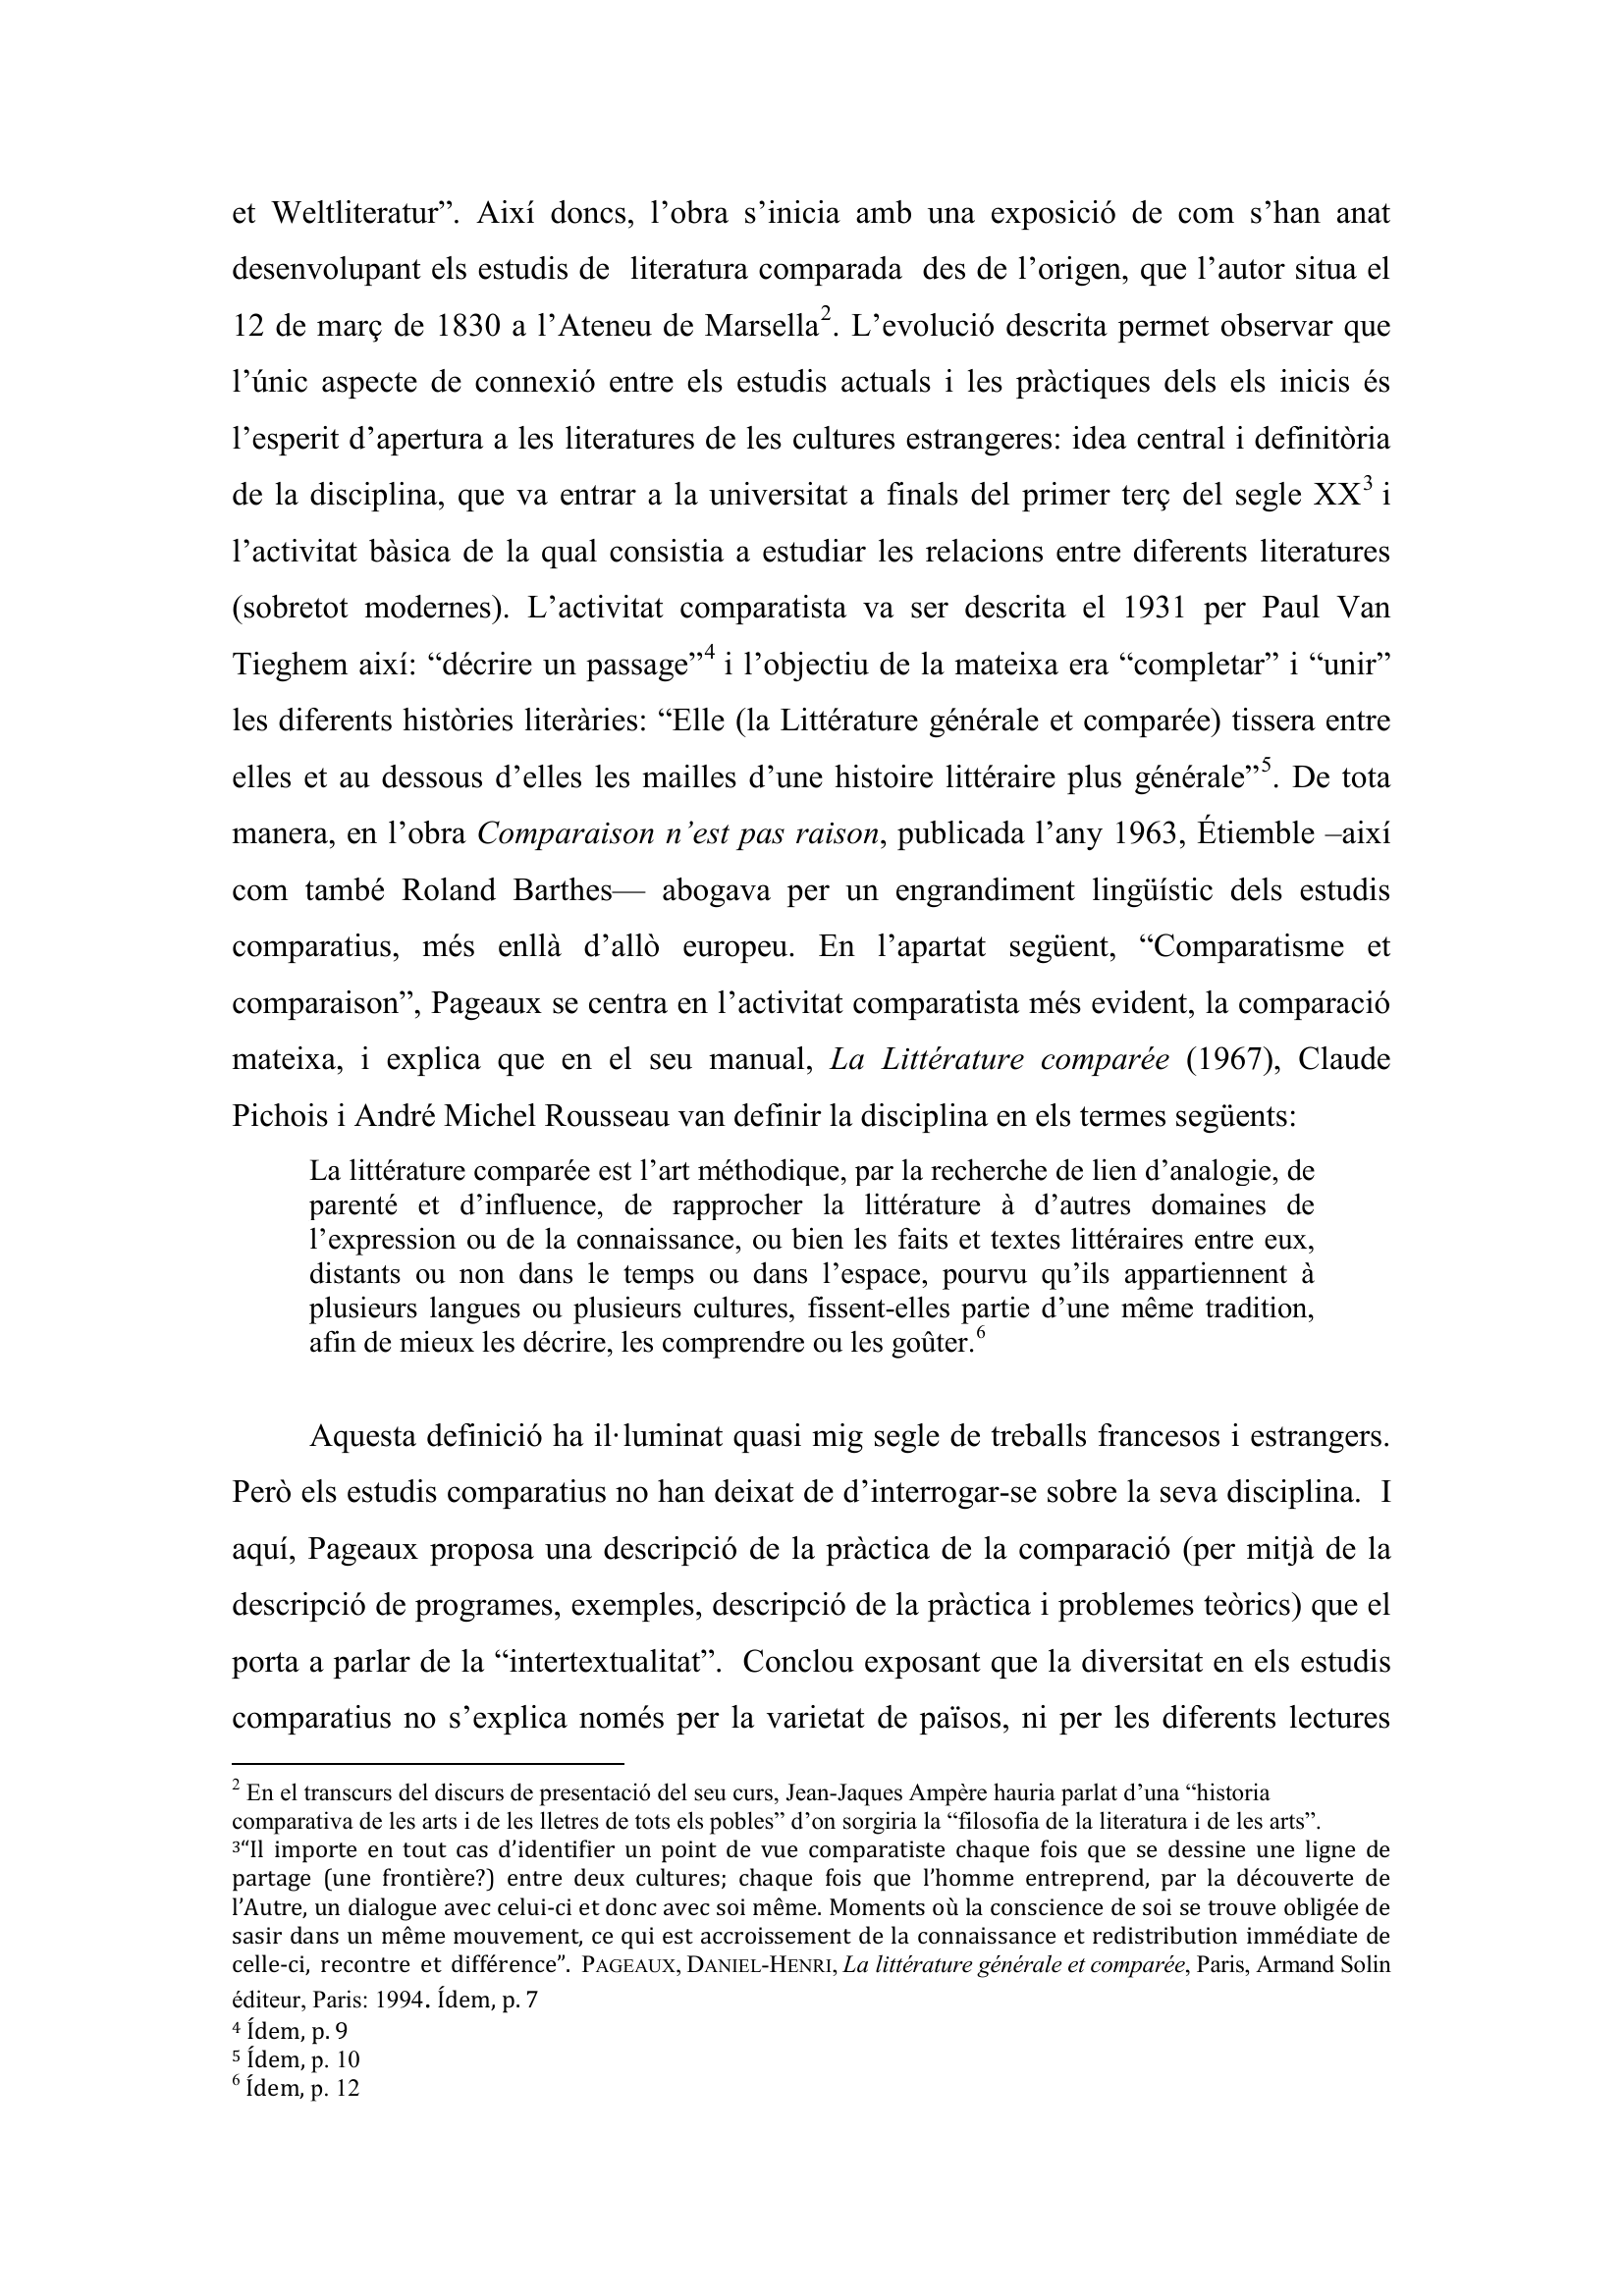 Prévisualisation du document PAGEAUX, DANIEL-HENRI. La littérature générale et comparée, Paris, Armand Solin éditeur